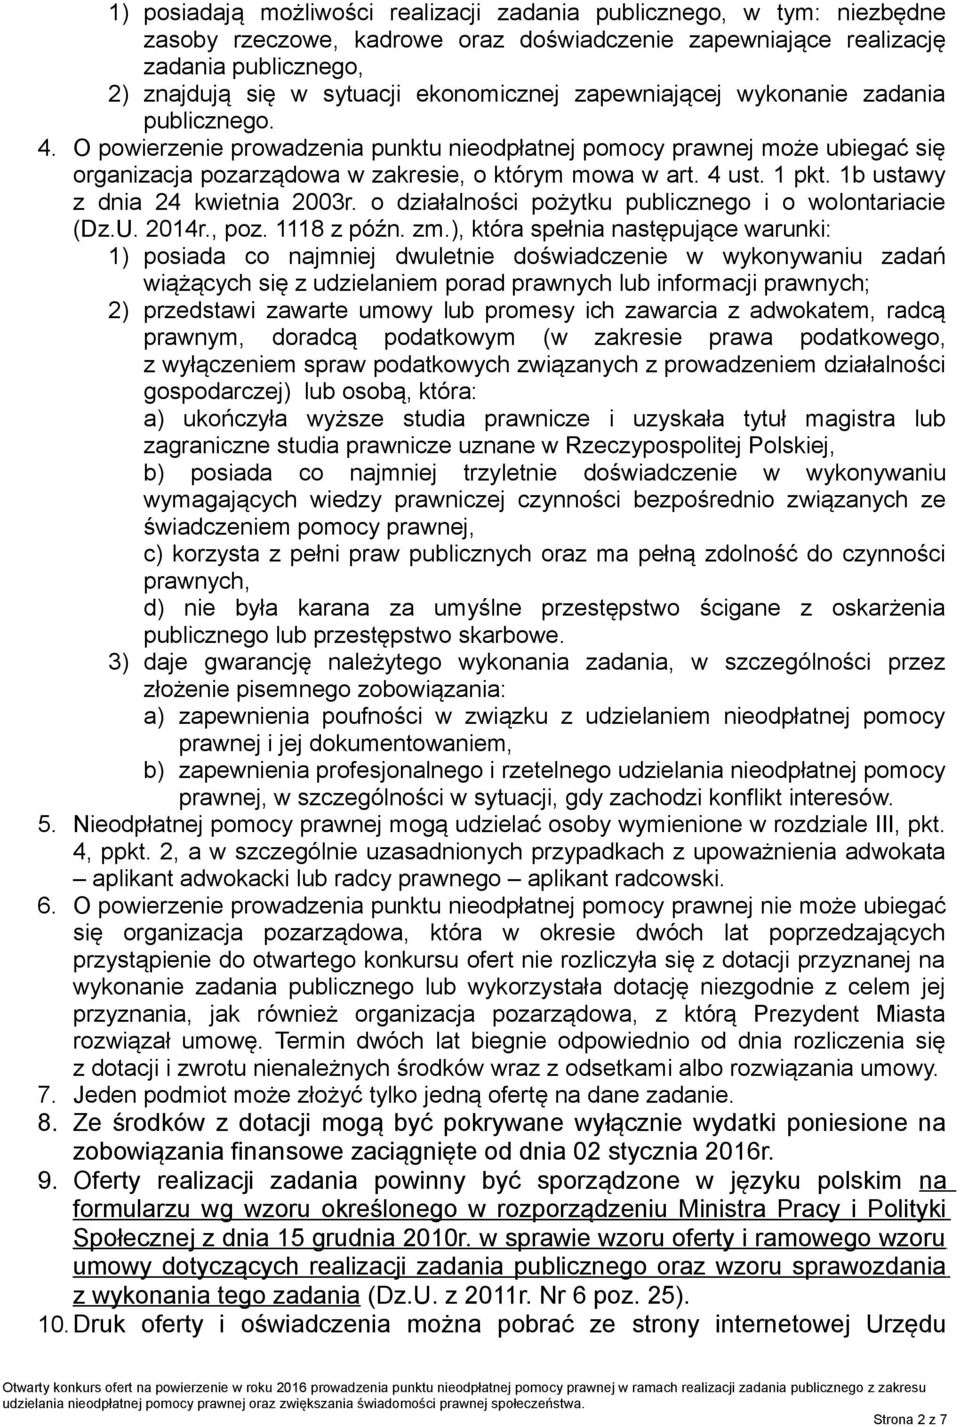 4 ust. 1 pkt. 1b ustawy z dnia 24 kwietnia 2003r. o działalności pożytku publicznego i o wolontariacie (Dz.U. 2014r., poz. 1118 z późn. zm.